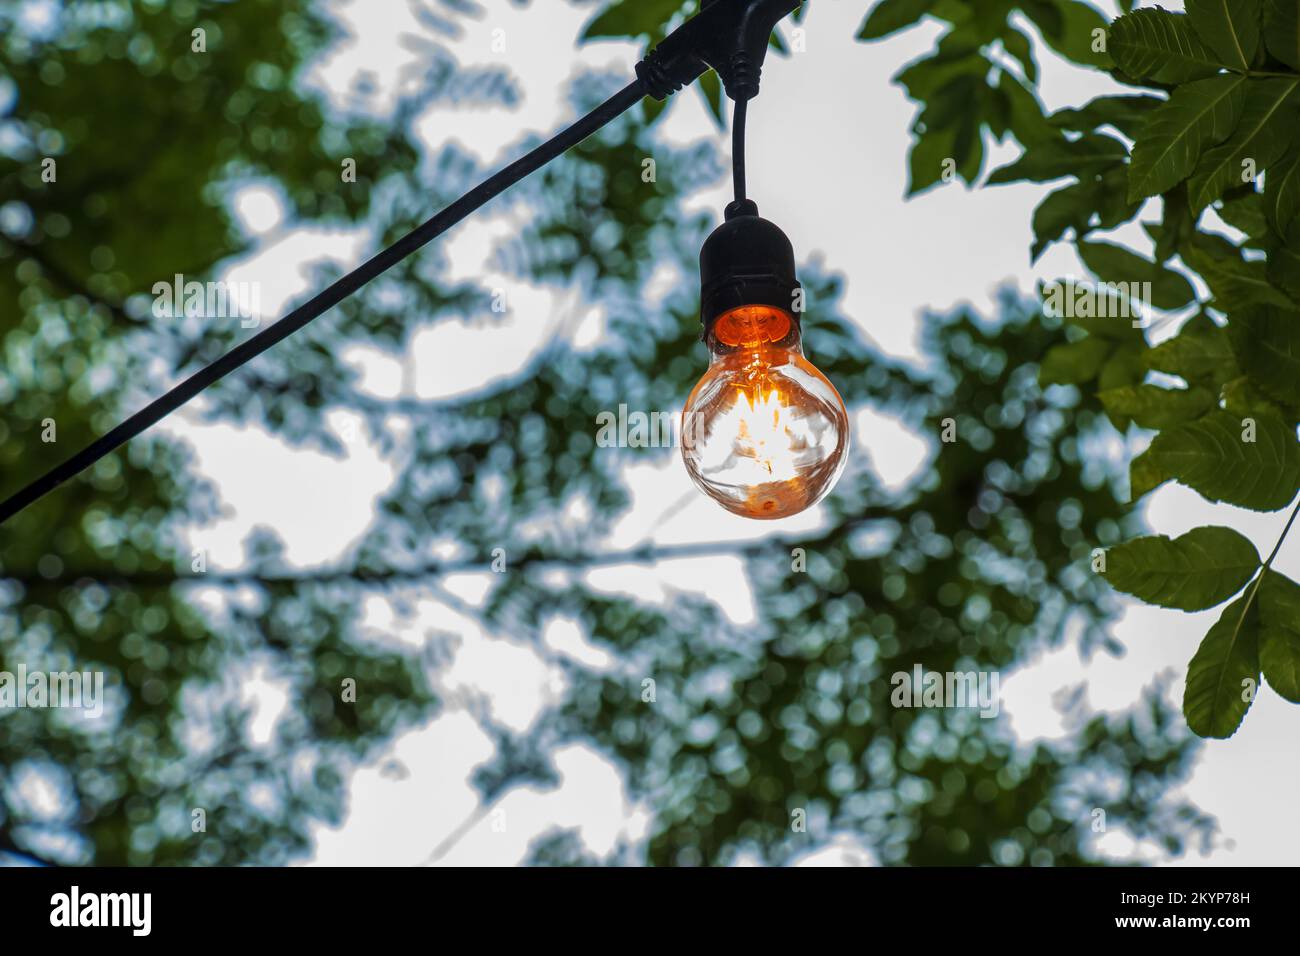 Une ampoule allumée est suspendue sur un arbre dans le jardin. Décoration  de jardin festive Photo Stock - Alamy